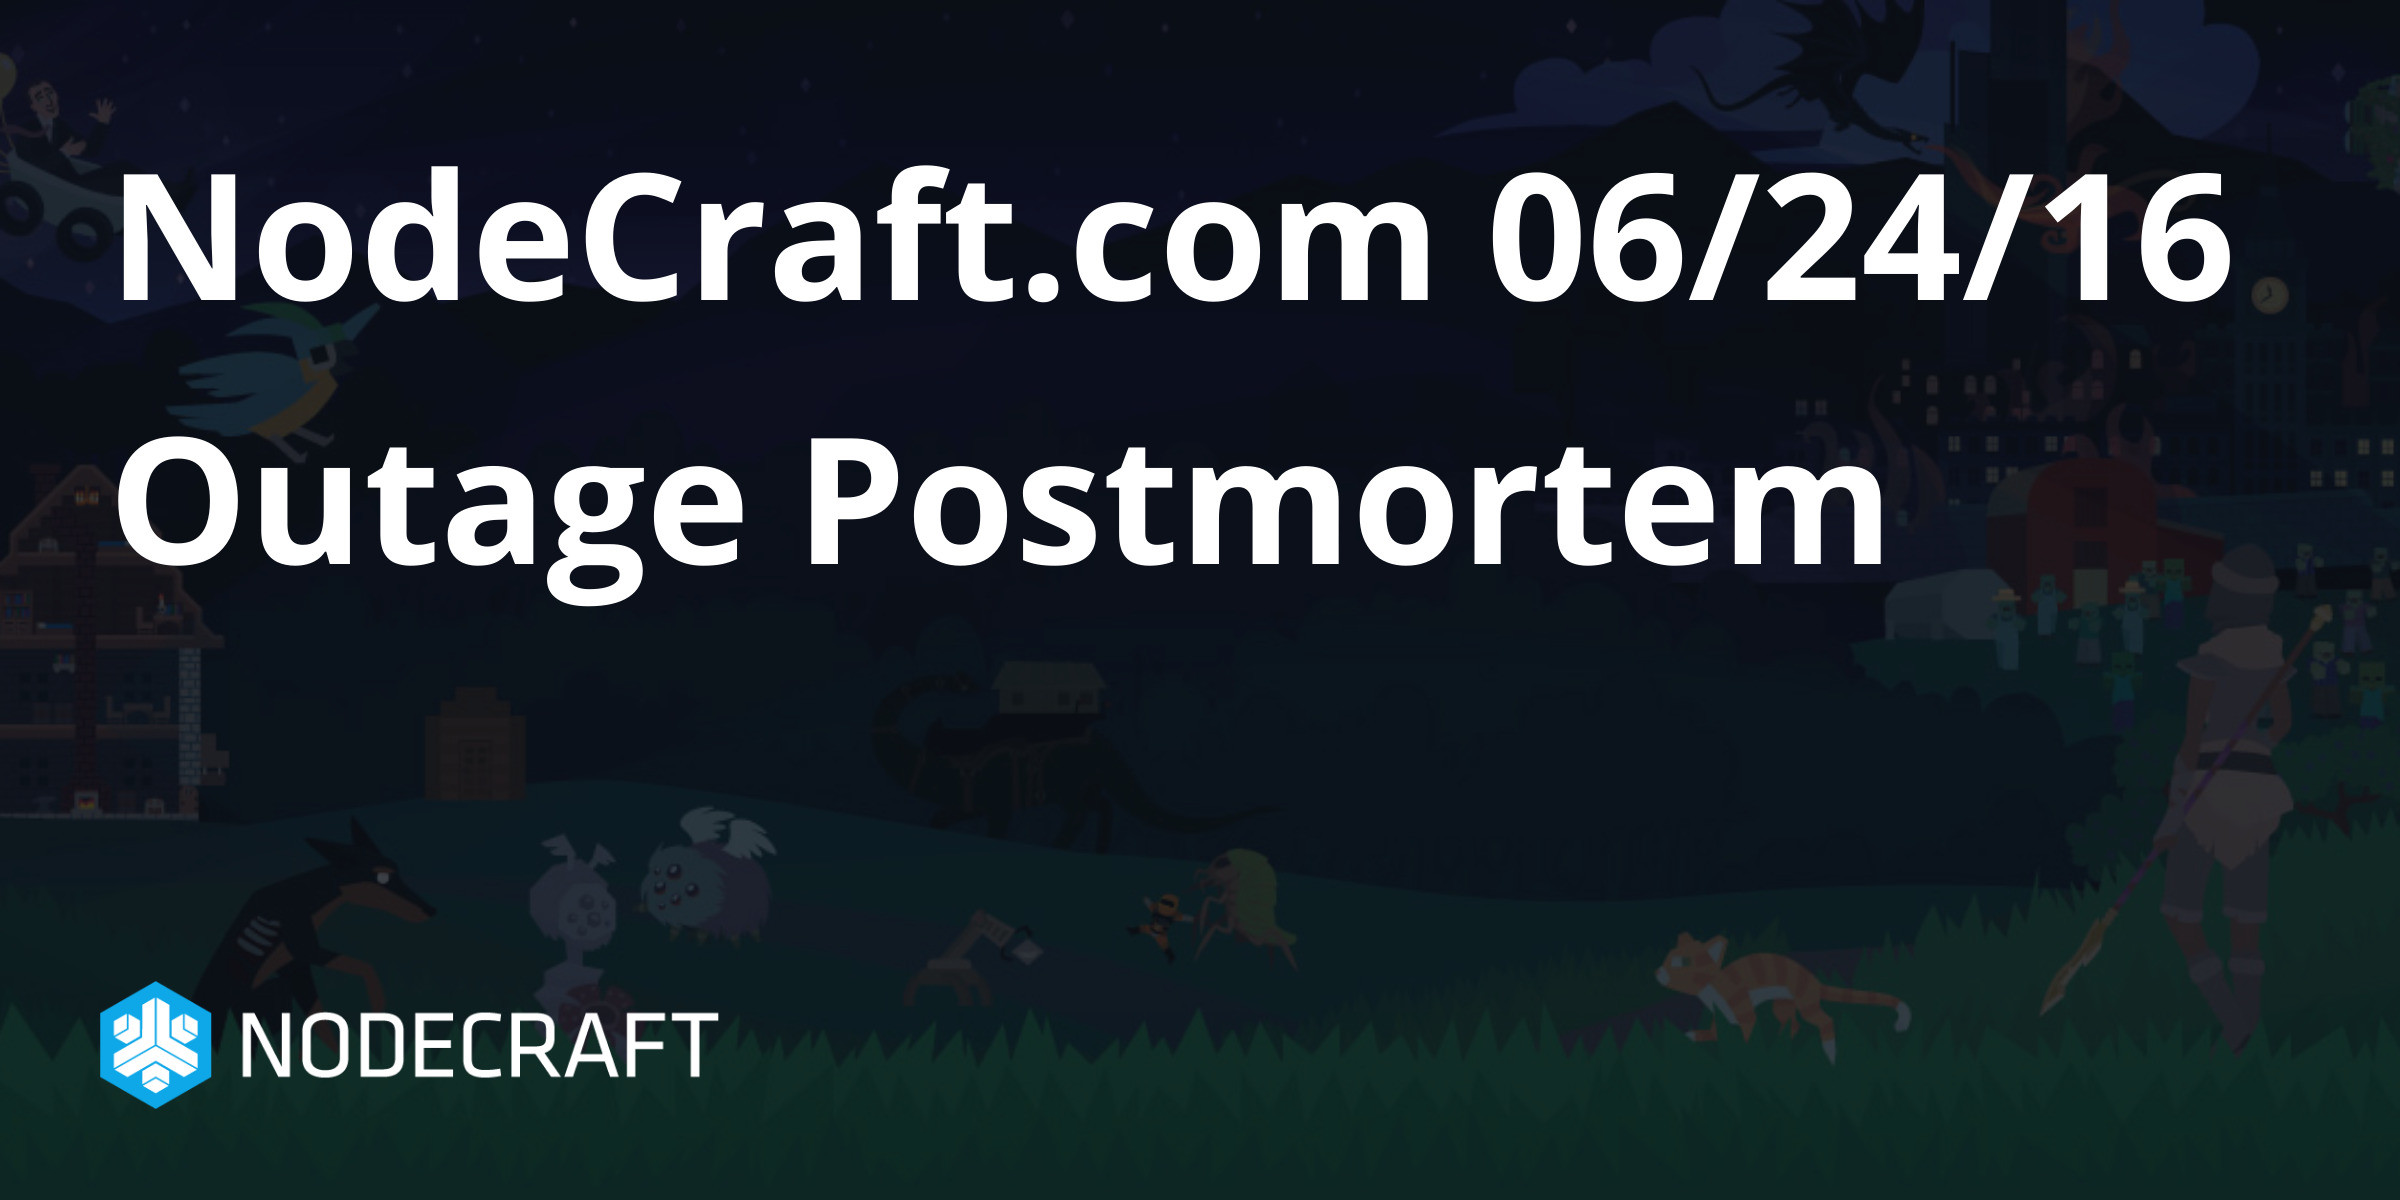 NodeCraft.com 06/24/16 Outage Postmortem